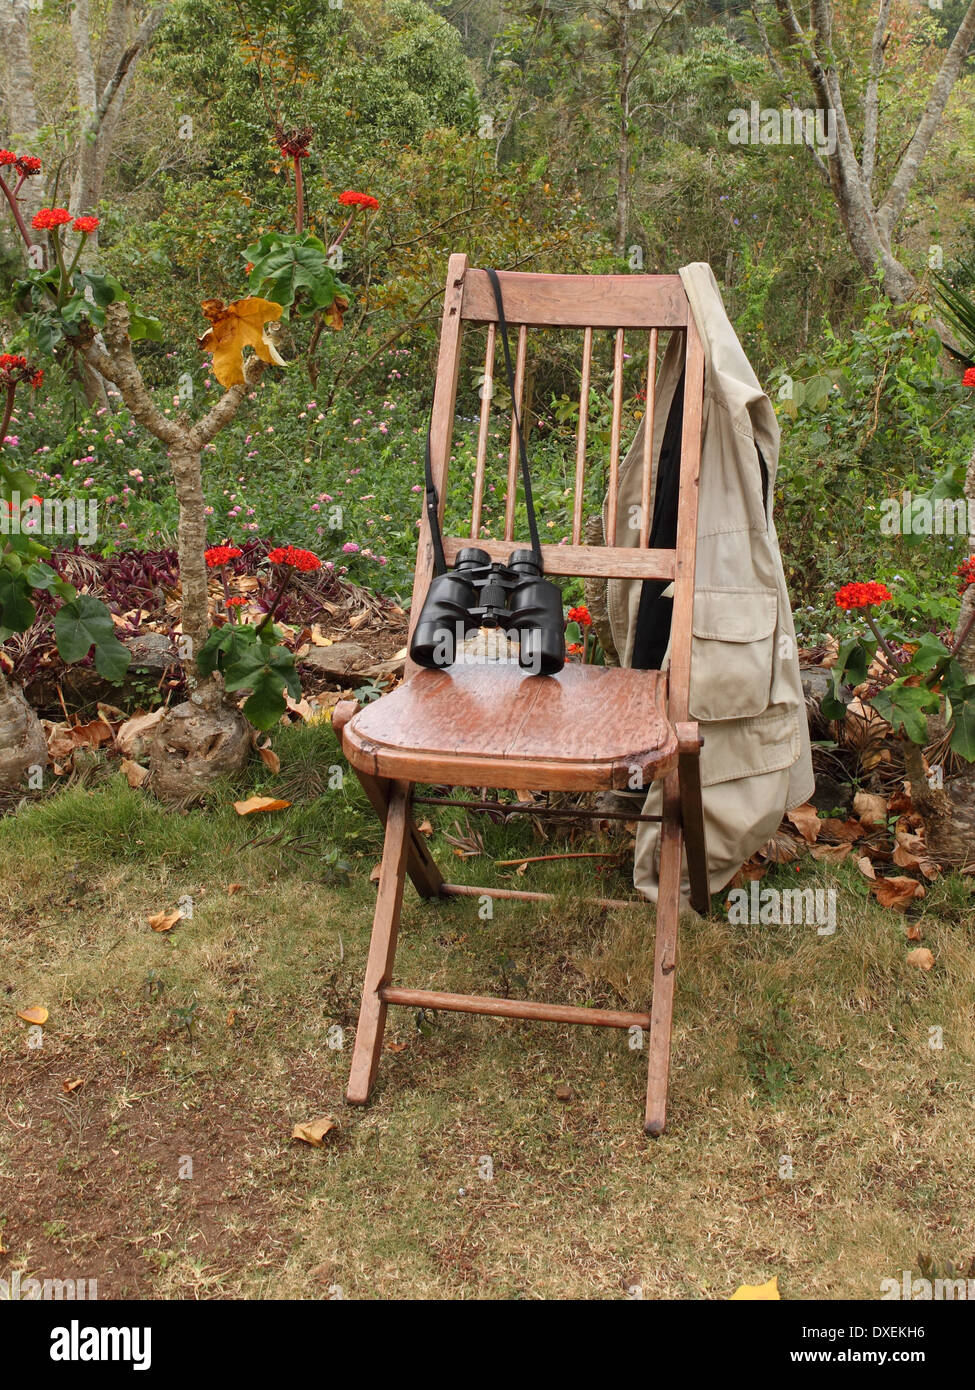 Eine Weste und ein Fernglas auf einem rustikalen Holzstuhl in einem tropischen Garten Stockfoto